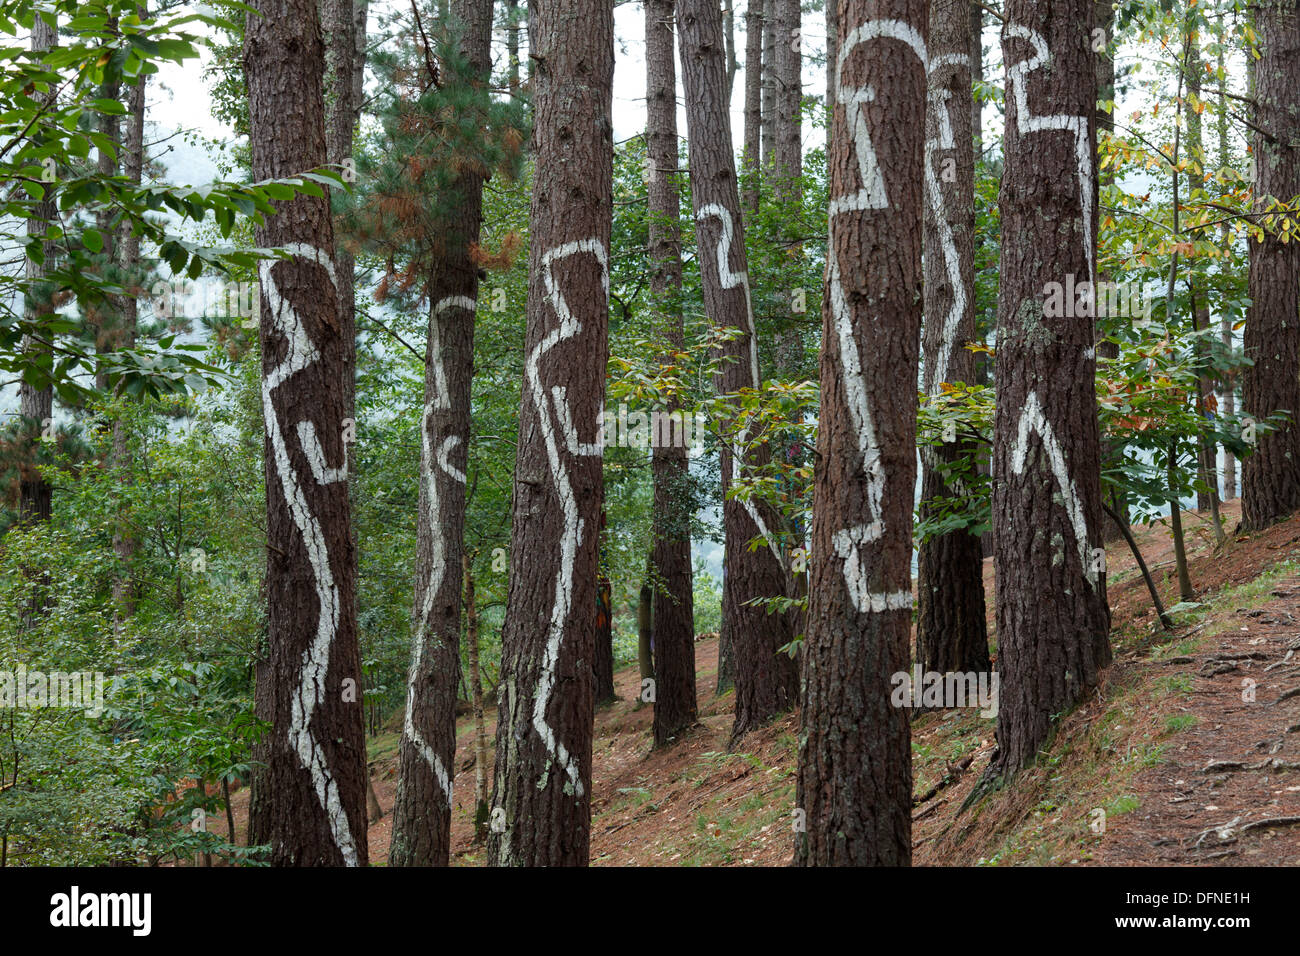 Painted trunks of trees, El bosque pintado de Oma, El bosque animado de Oma, Convivencia de las figuras y de las rayas del minim Stock Photo